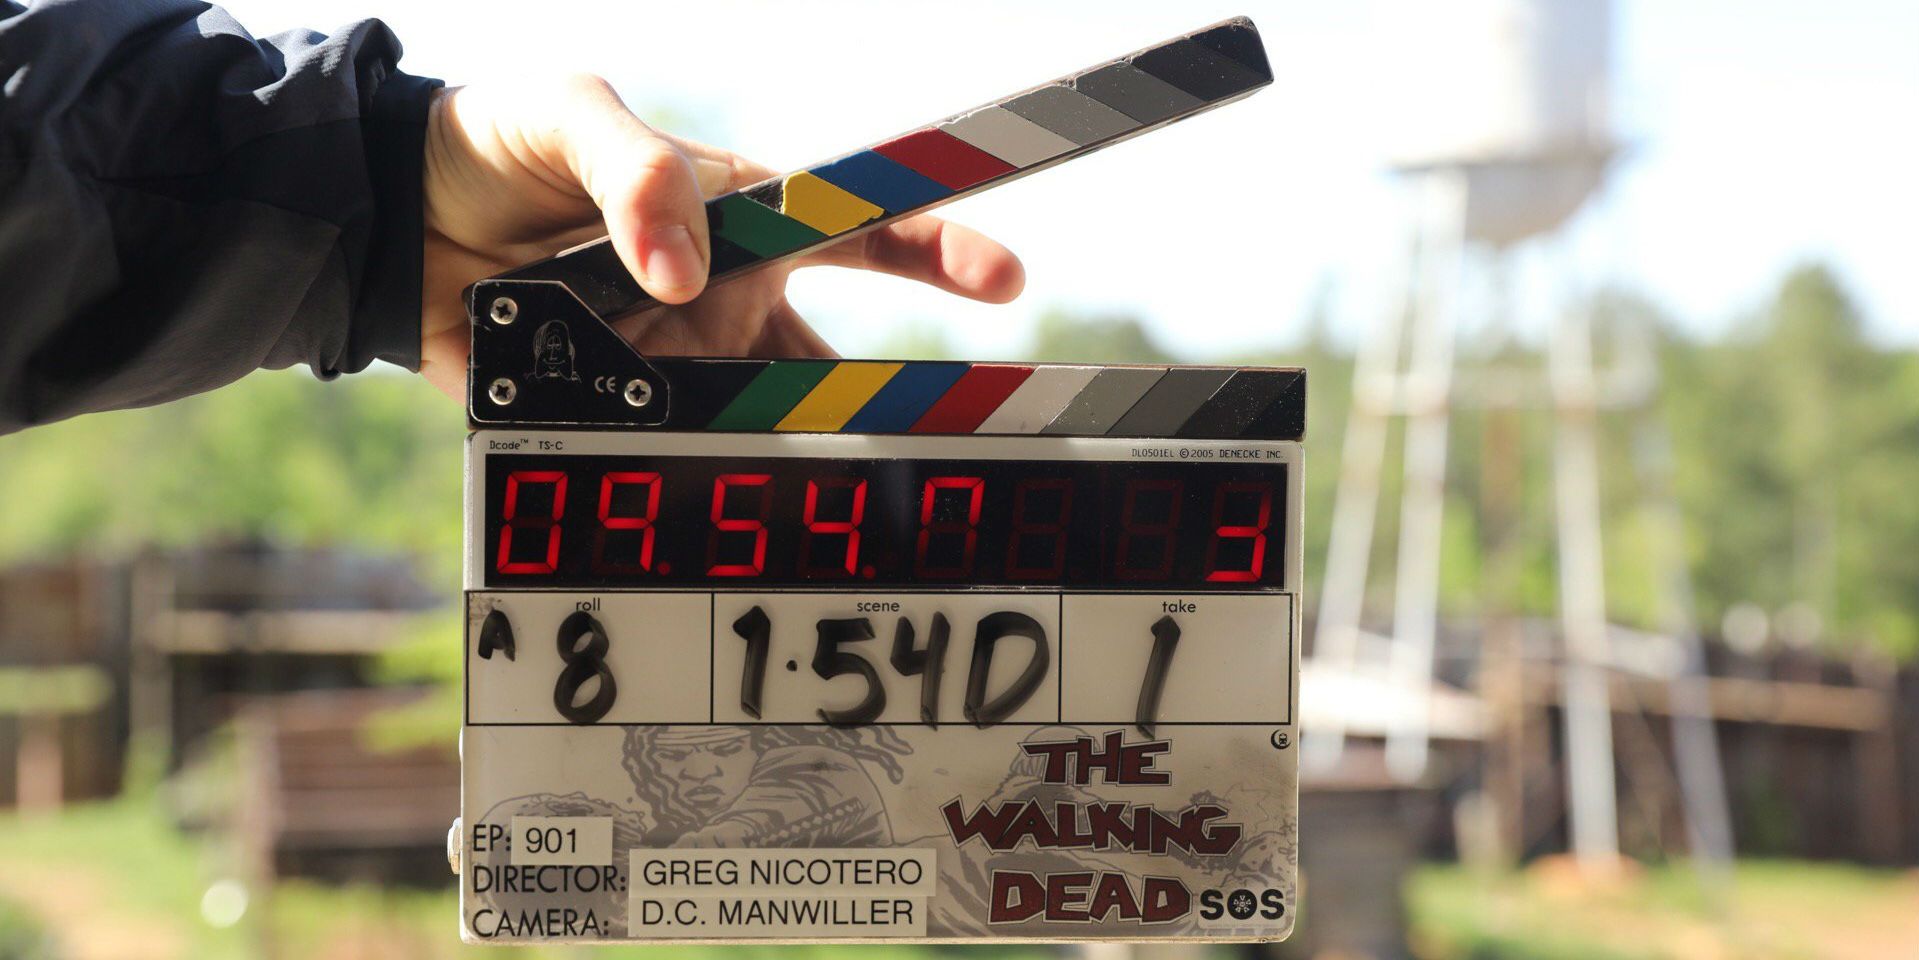 The Walking Dead season 9 starts filming